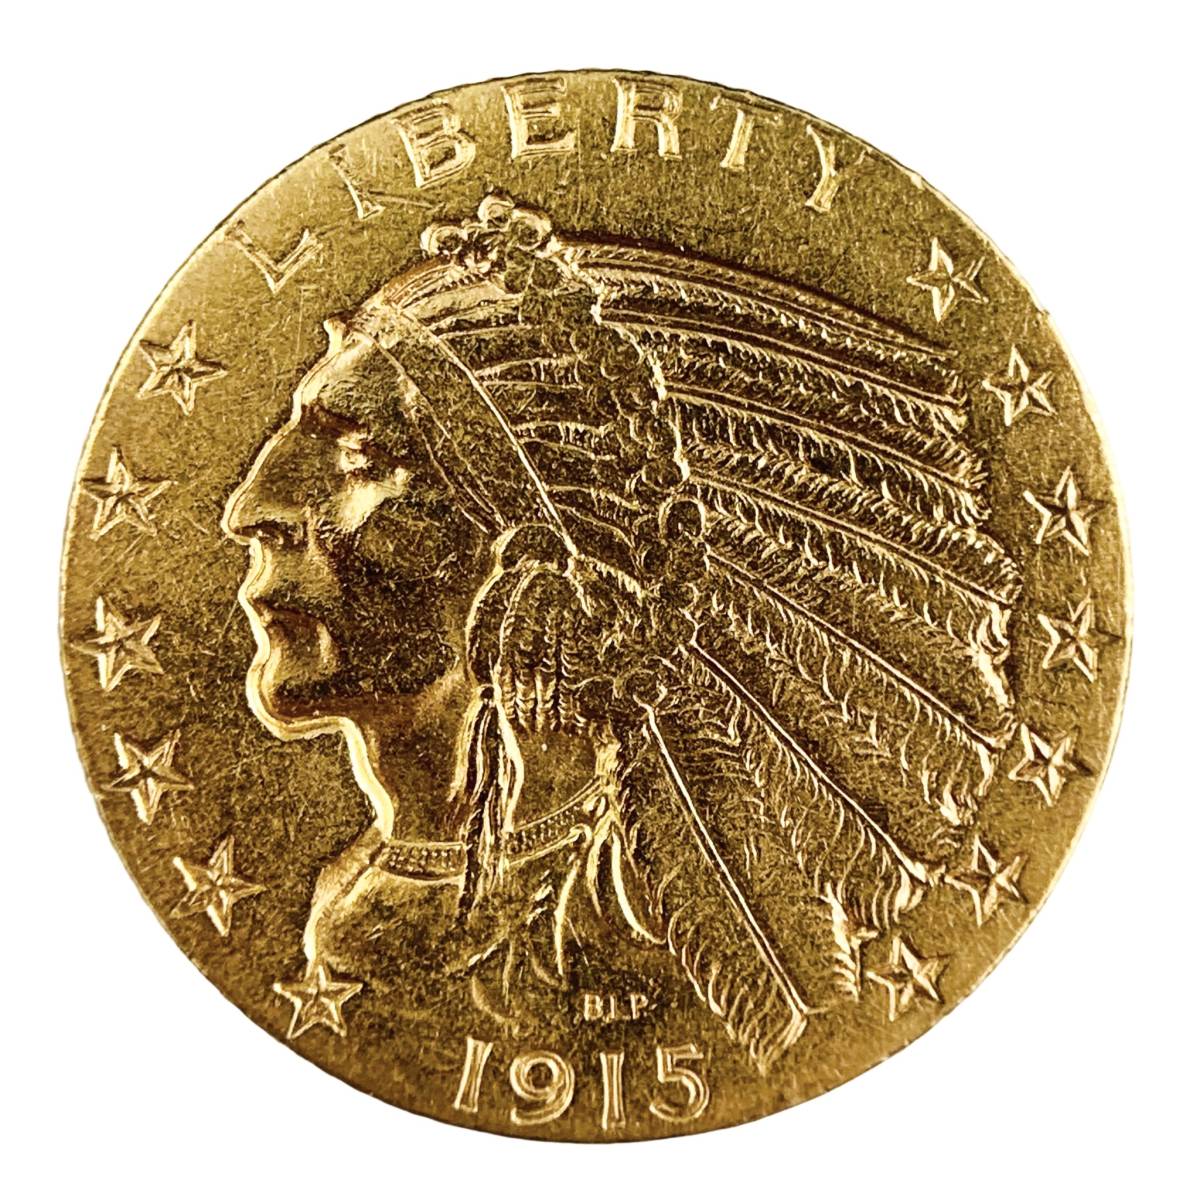 インディアン アメリカ 金貨 5ドル イーグル 1915年 8g 21.6金 イエローゴールド コレクション アンティークコイン Gold